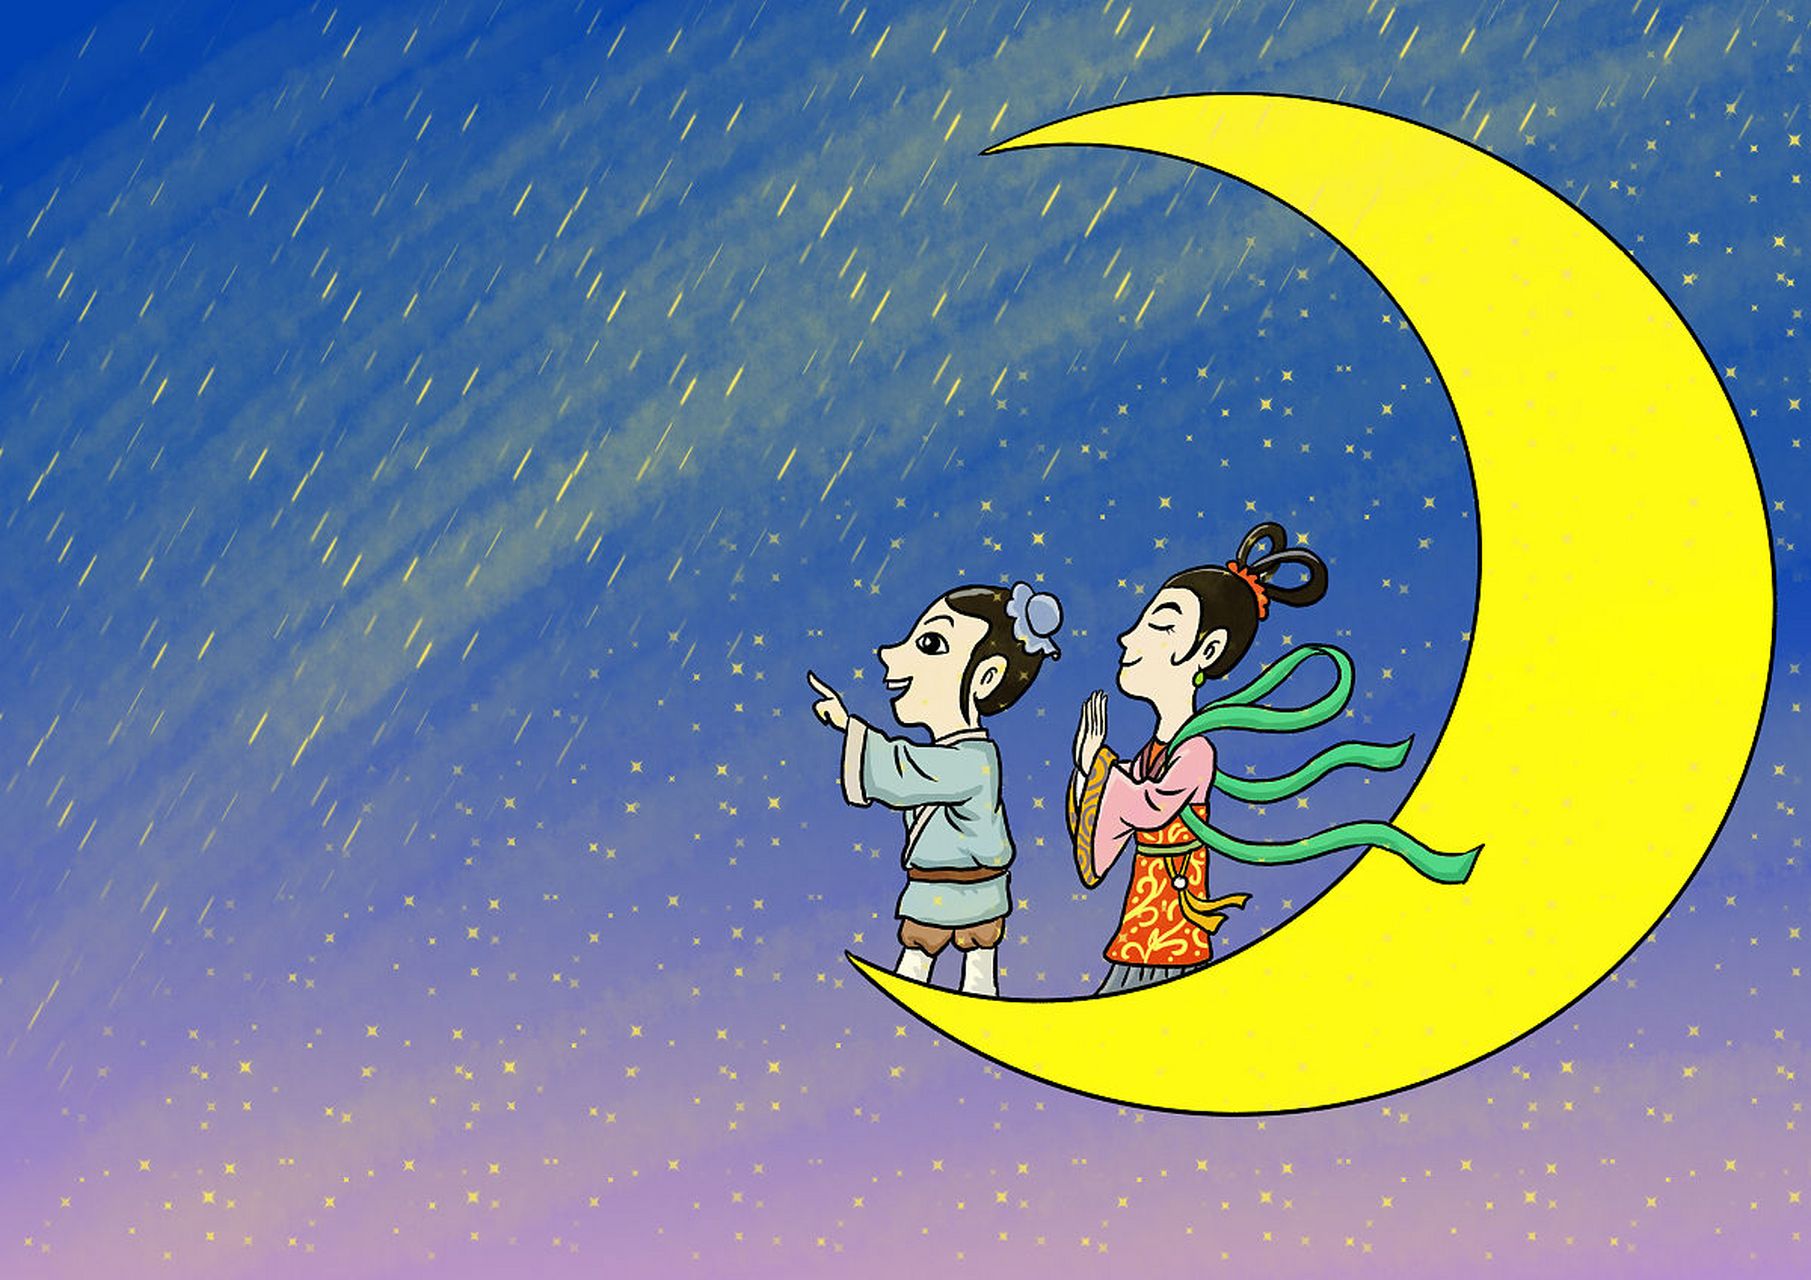 古人通过夜观天象预测未来事件,星相学在中国历史悠久,与道教,儒家